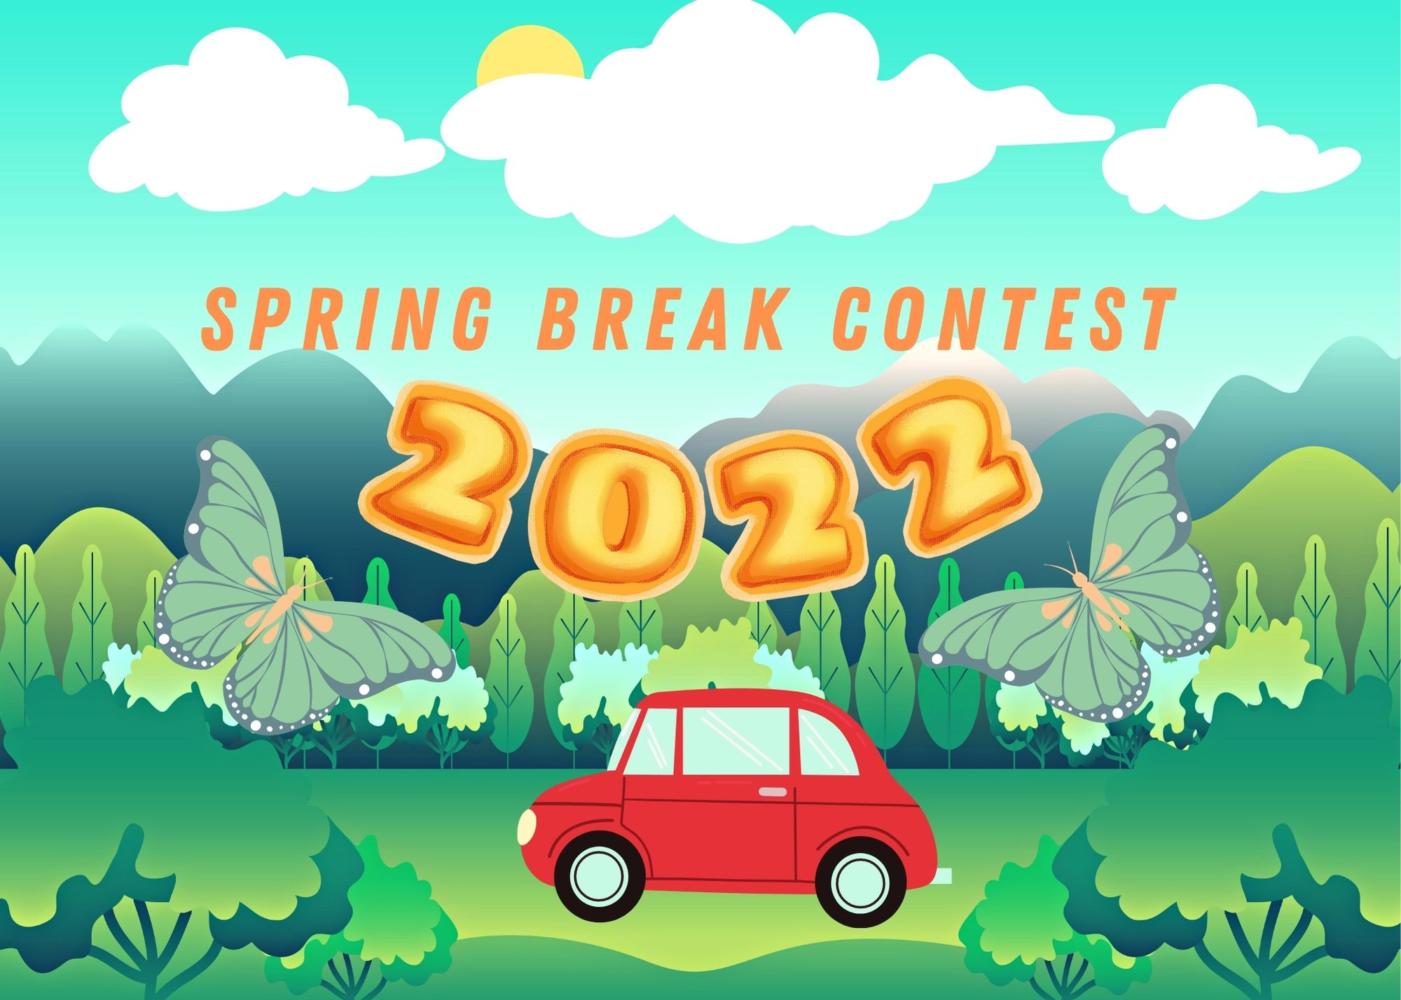 Spring Break Contest 2022